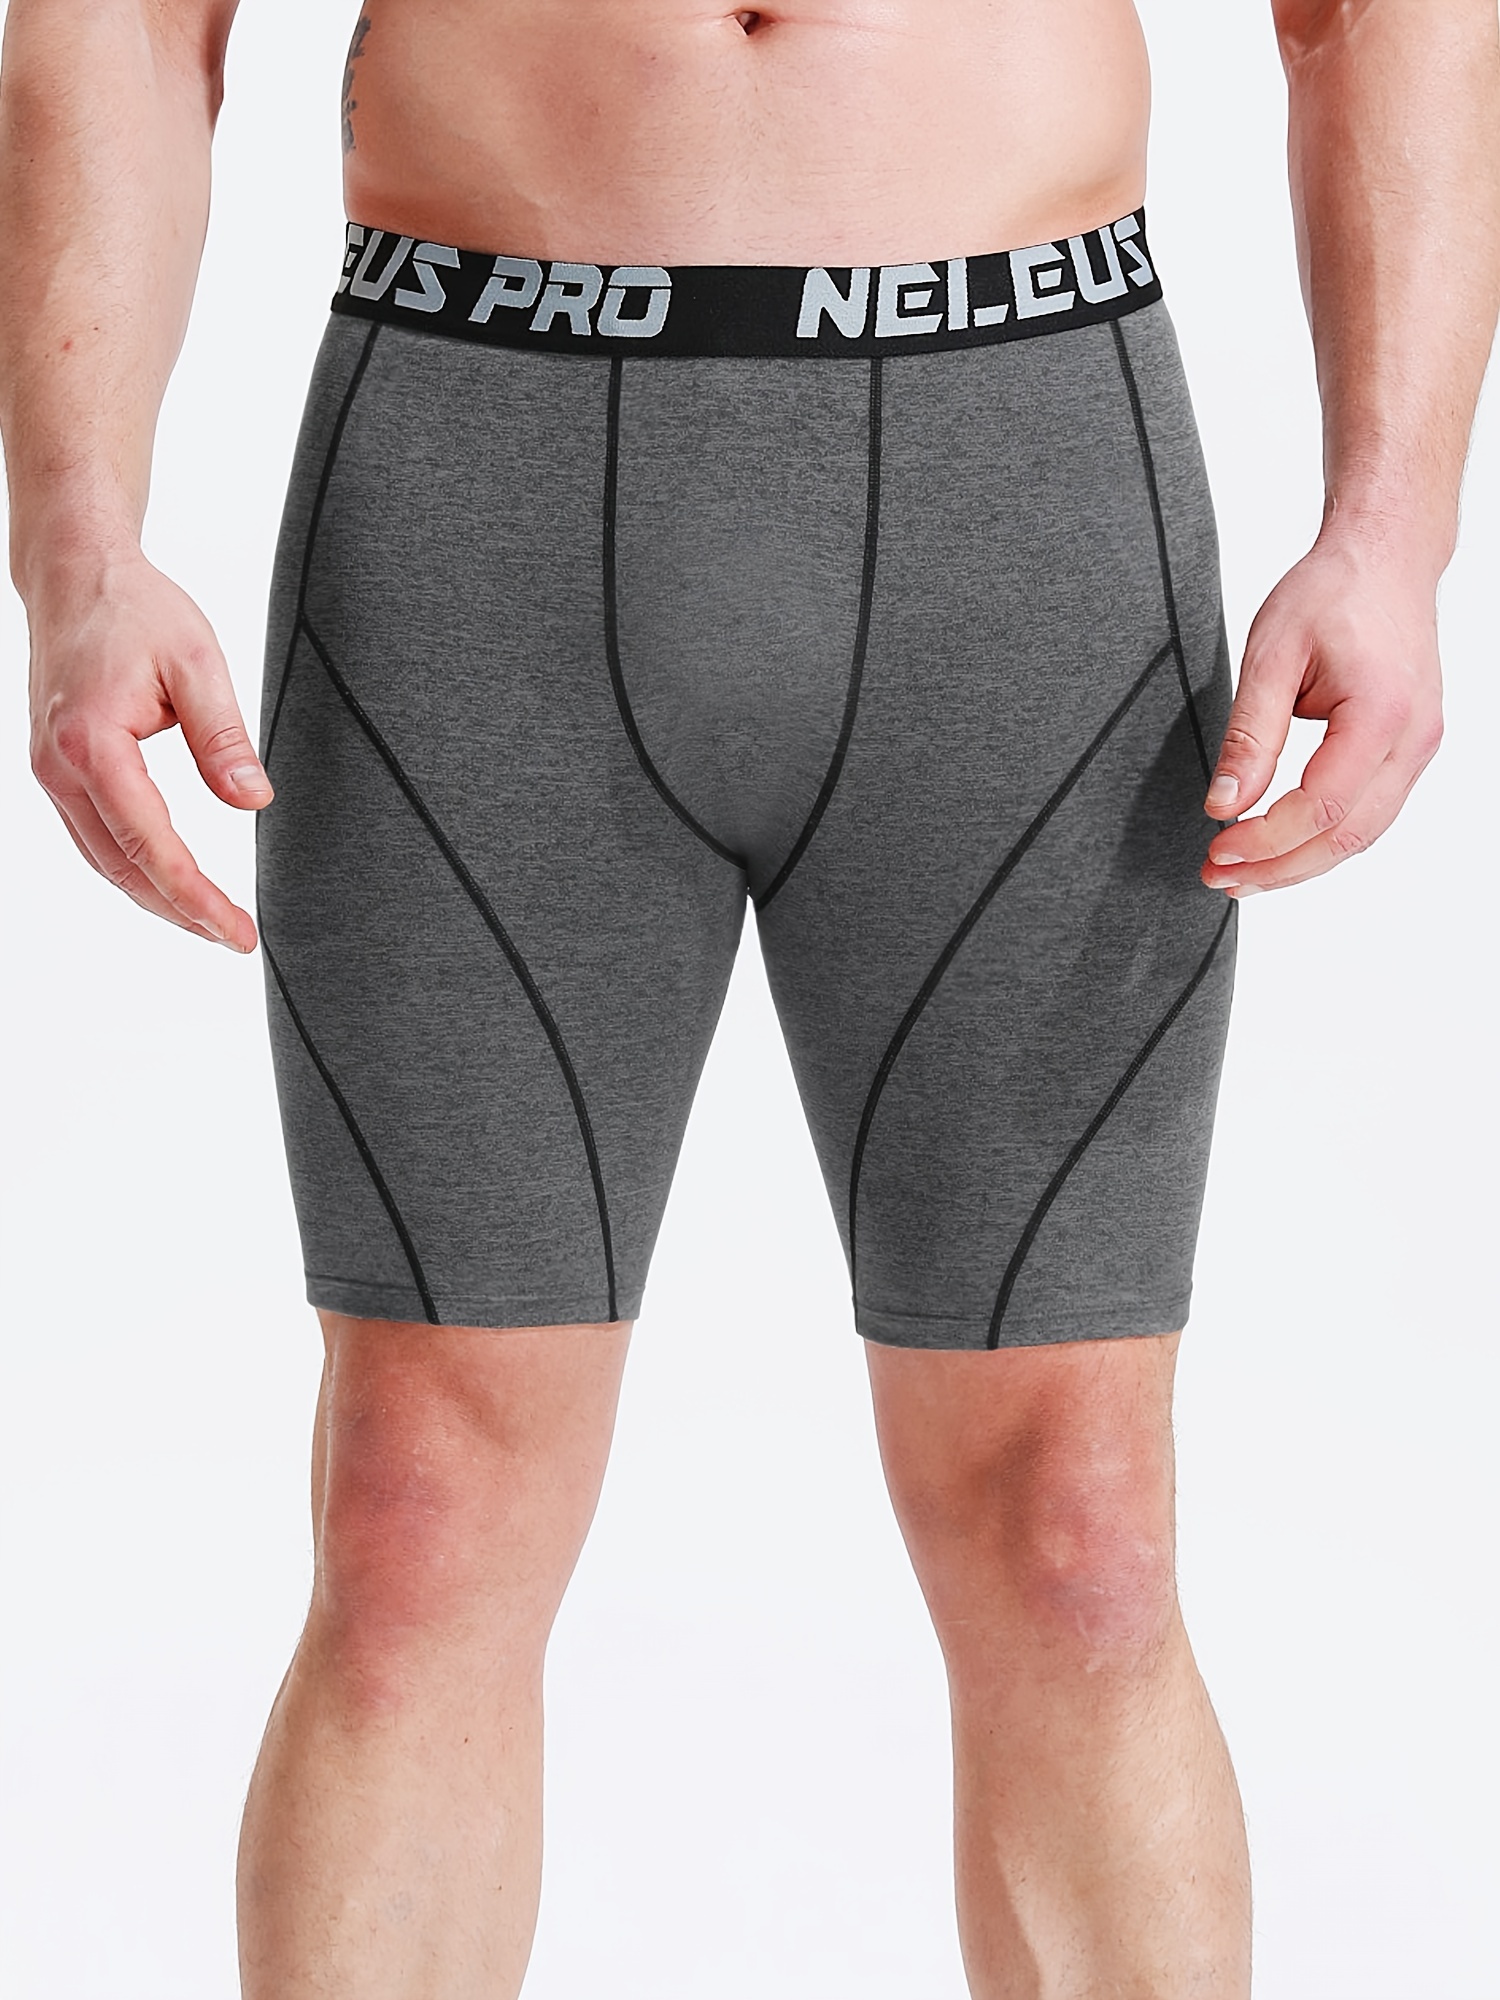 NELEUS Mens 3 Pack Compression Shorts